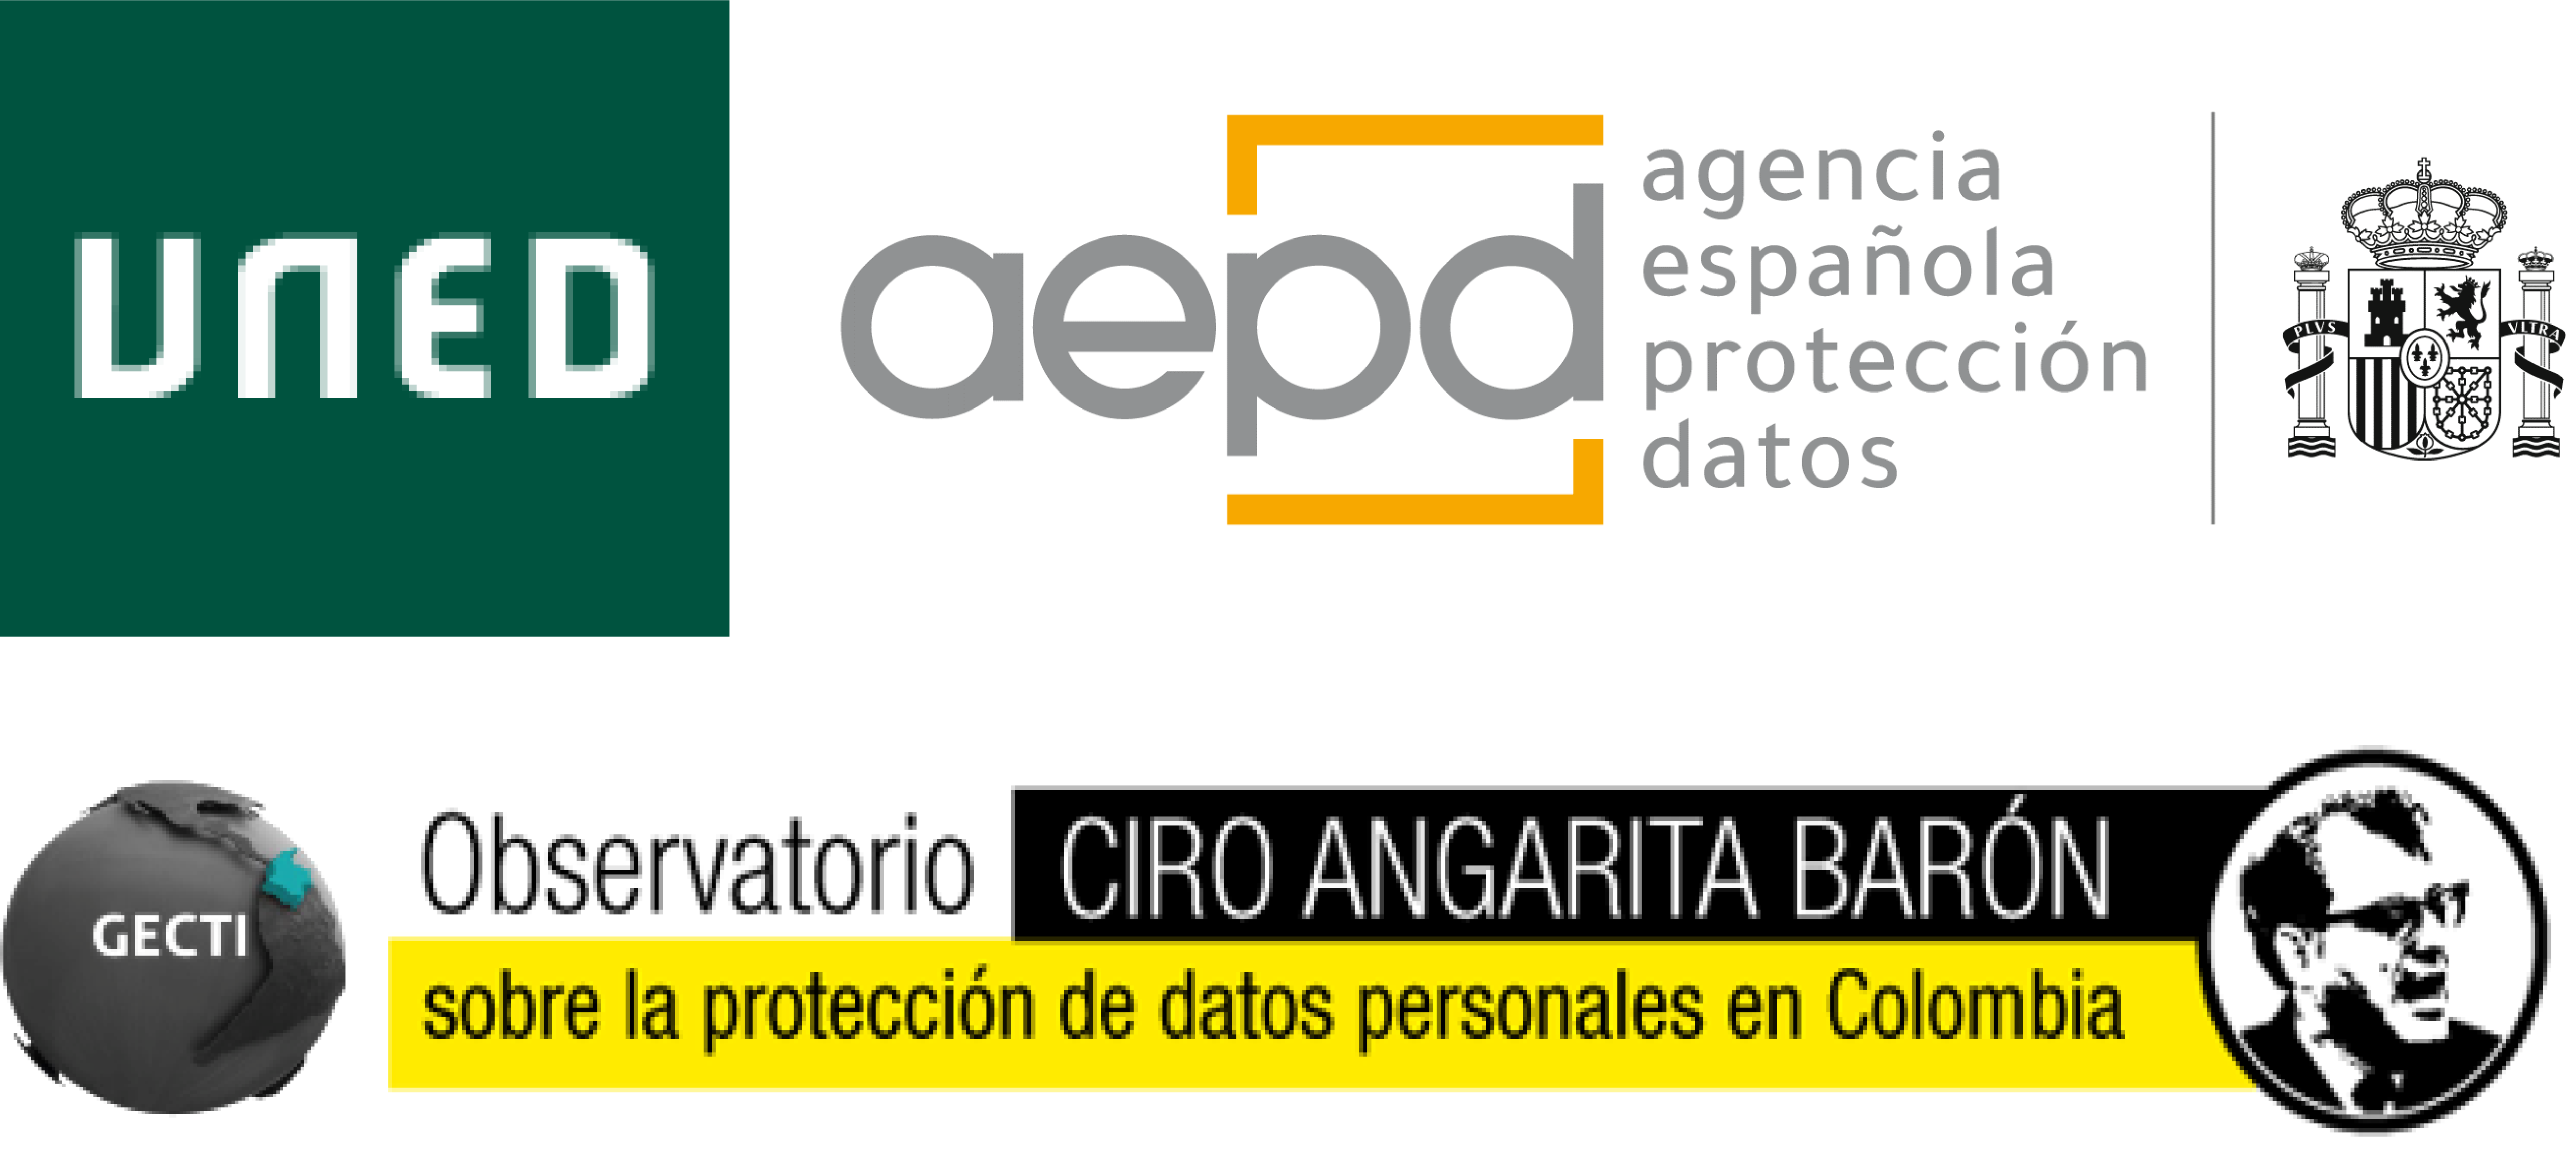 El Derecho Fundamental a la Protección de Datos Personales y la Promoción de los Profesionales de la Privacidad